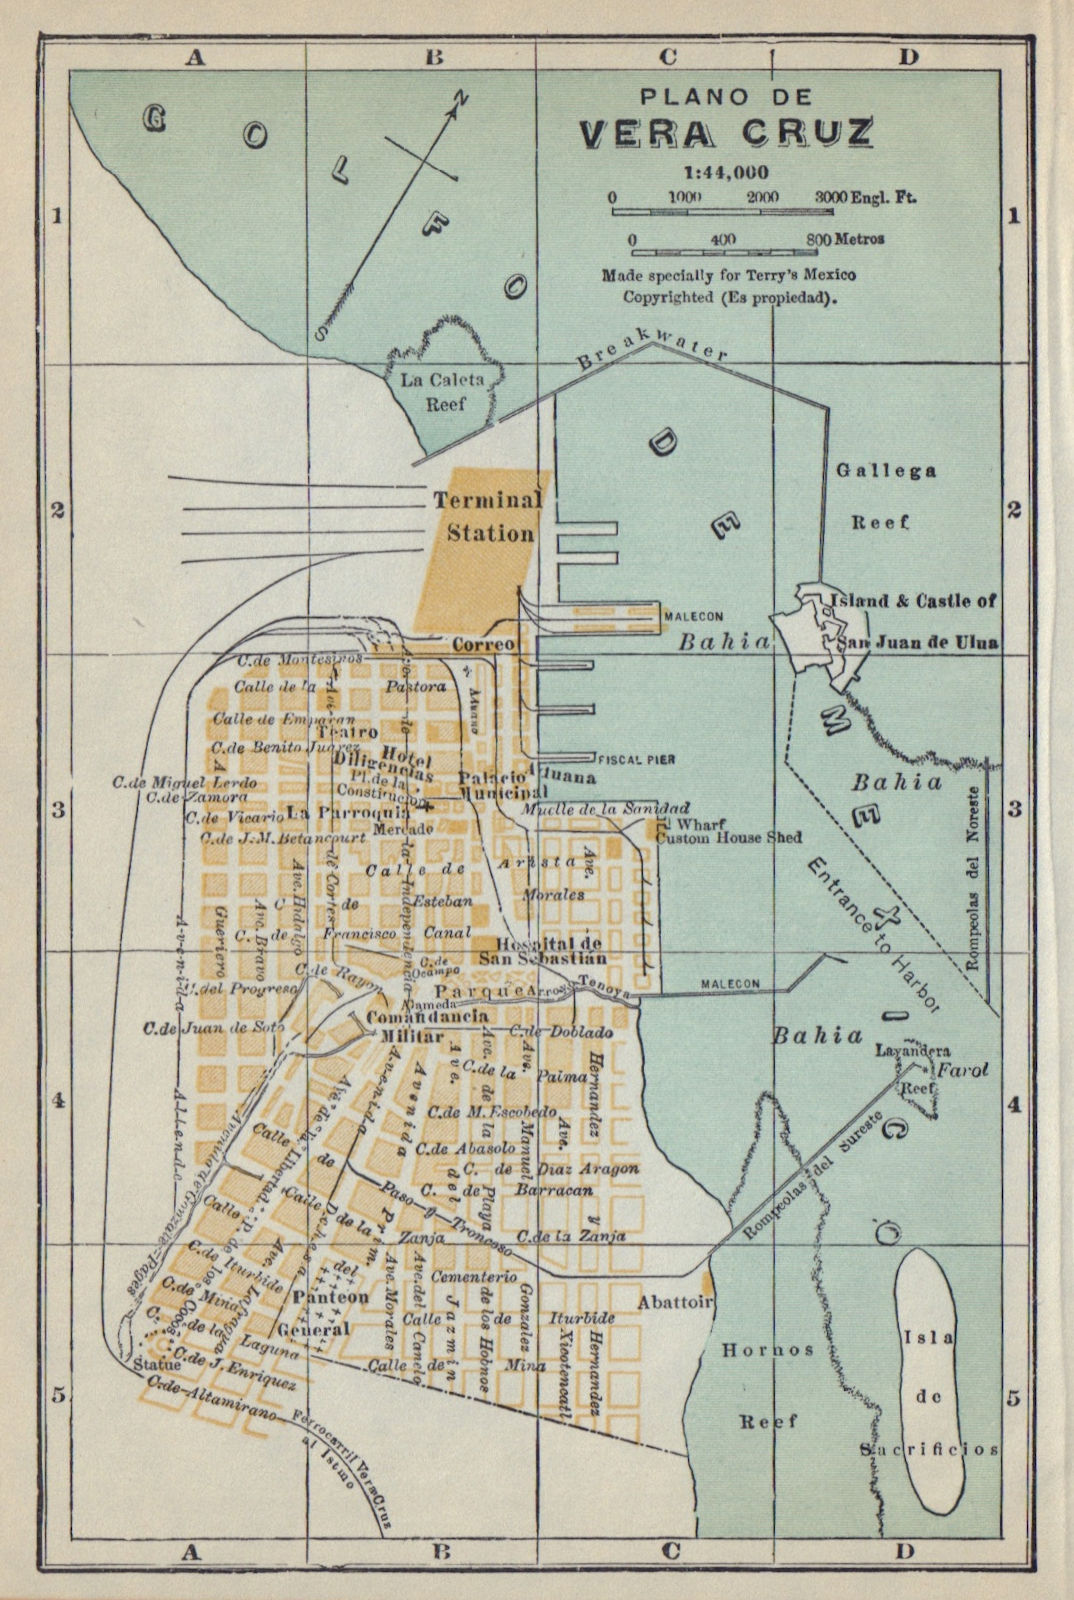 Plano de VERACRUZ, Mexico. Mapa de la ciudad. City/town plan 1938 old